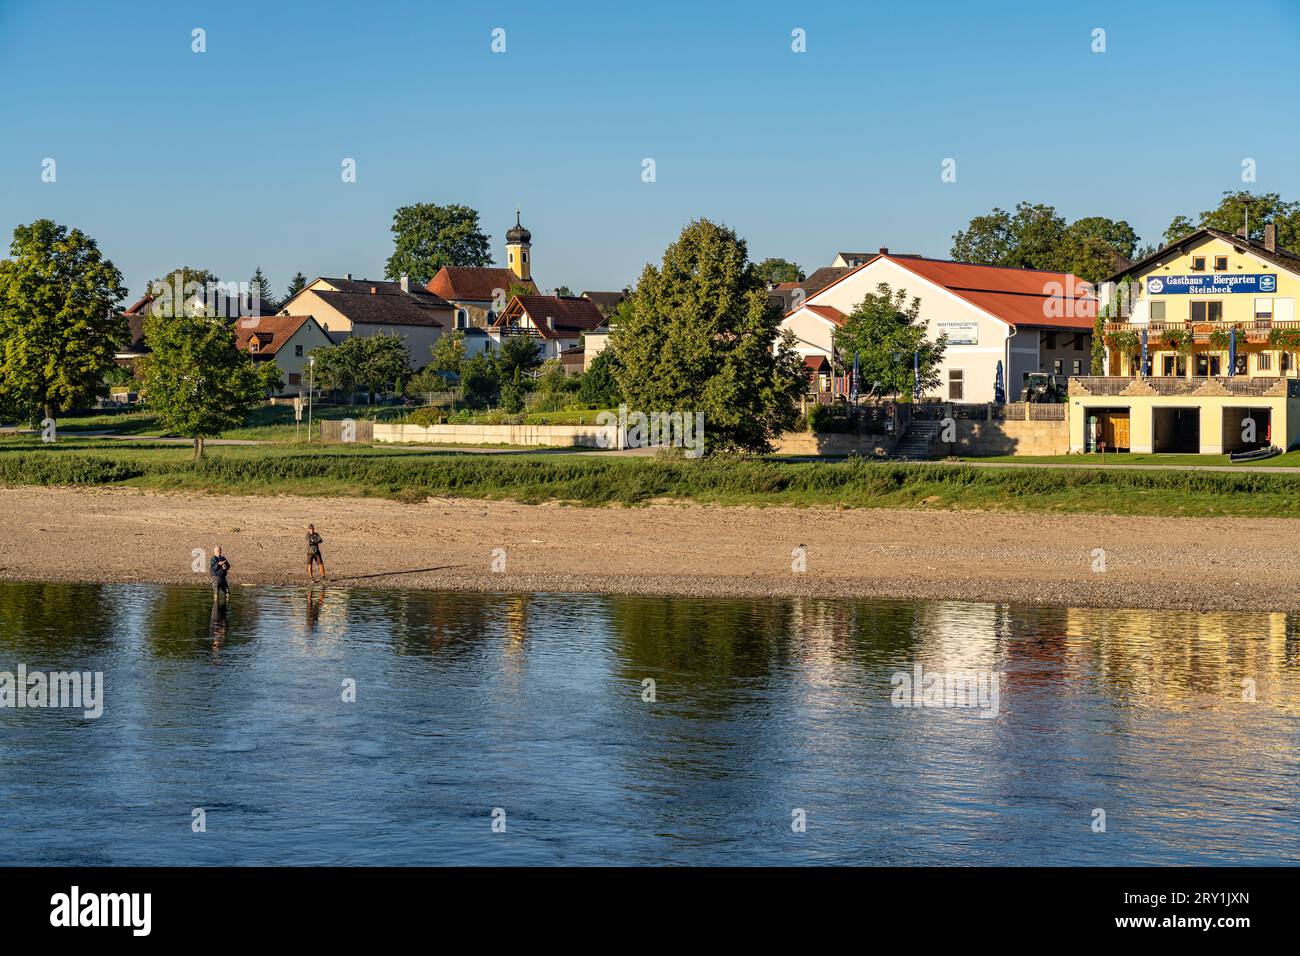 Kirchdorf Stausacker an der Donau in Kehlheim, Bayern, Deutschland  |  Stausacker village at the Danube river  in Kehlheim, Bavaria, Germany Stock Photo